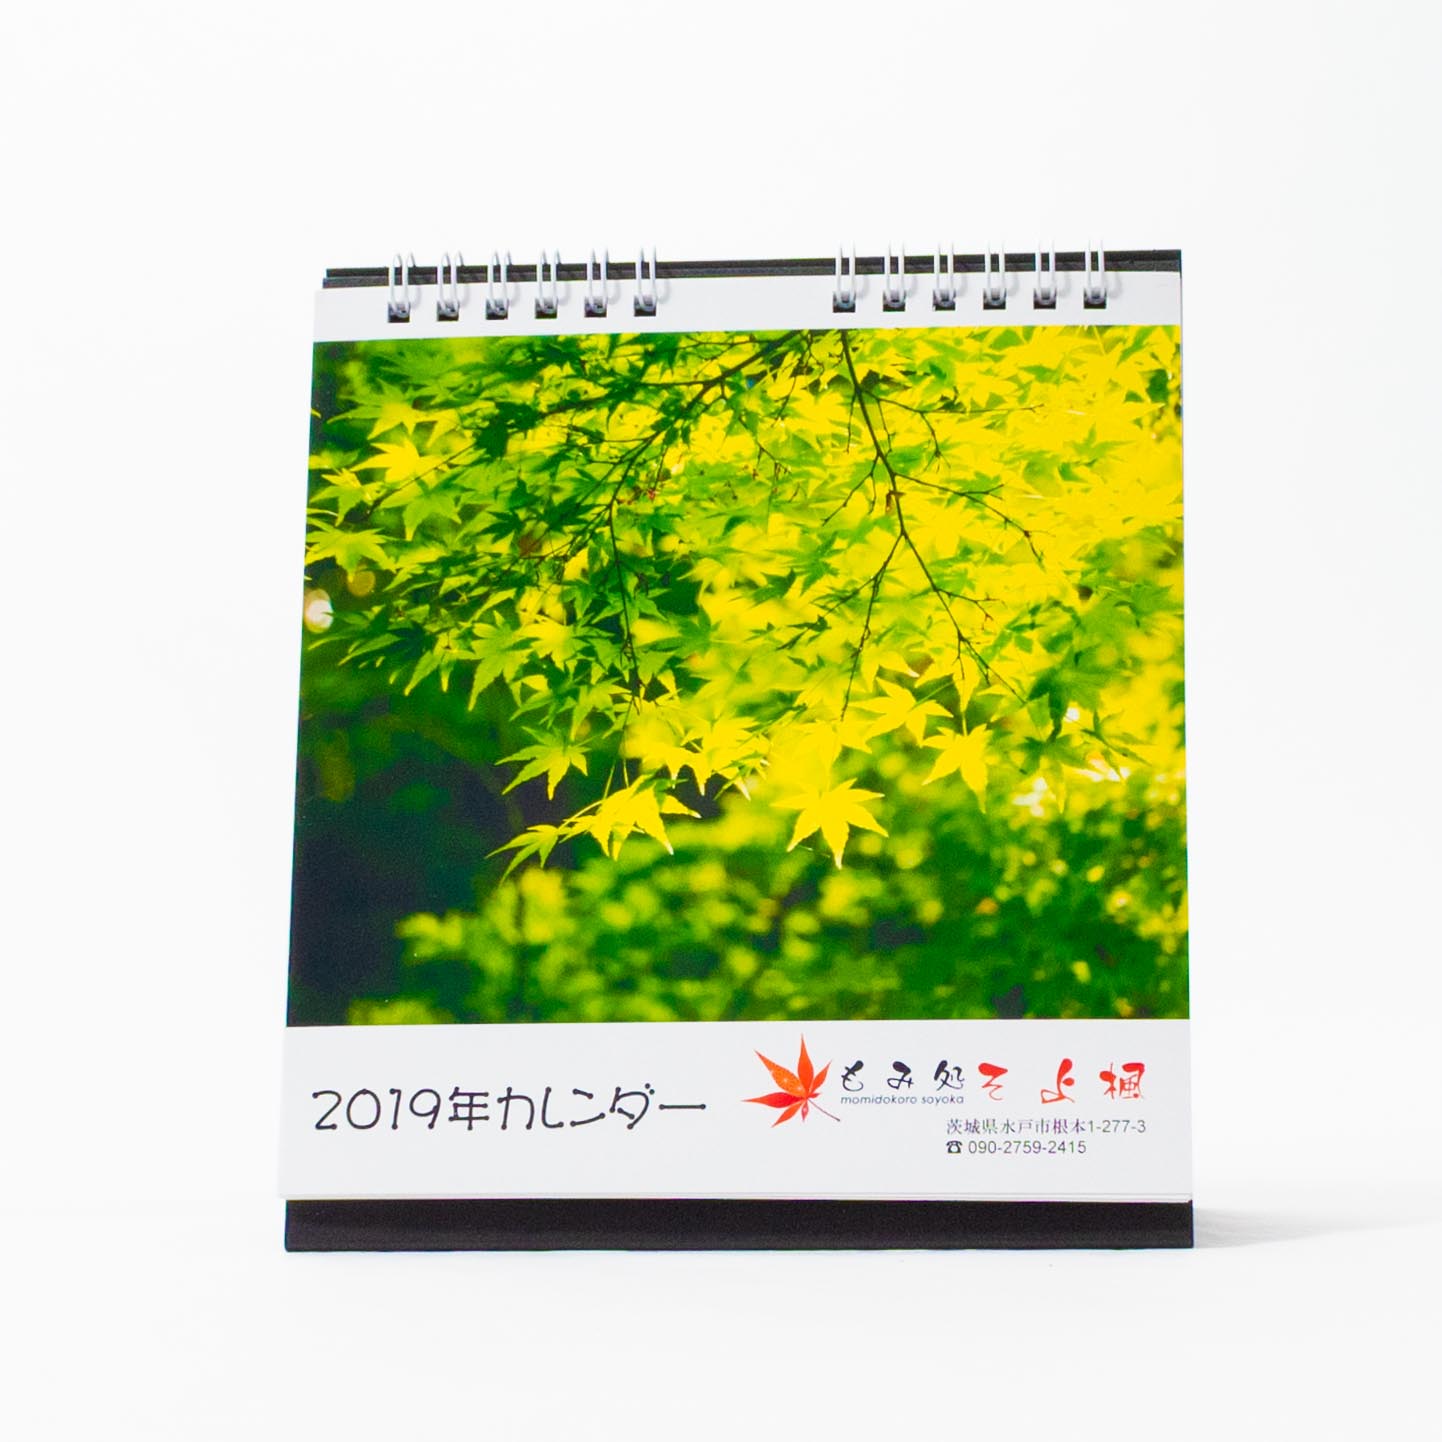 「石川  依里 様」製作のオリジナルカレンダー